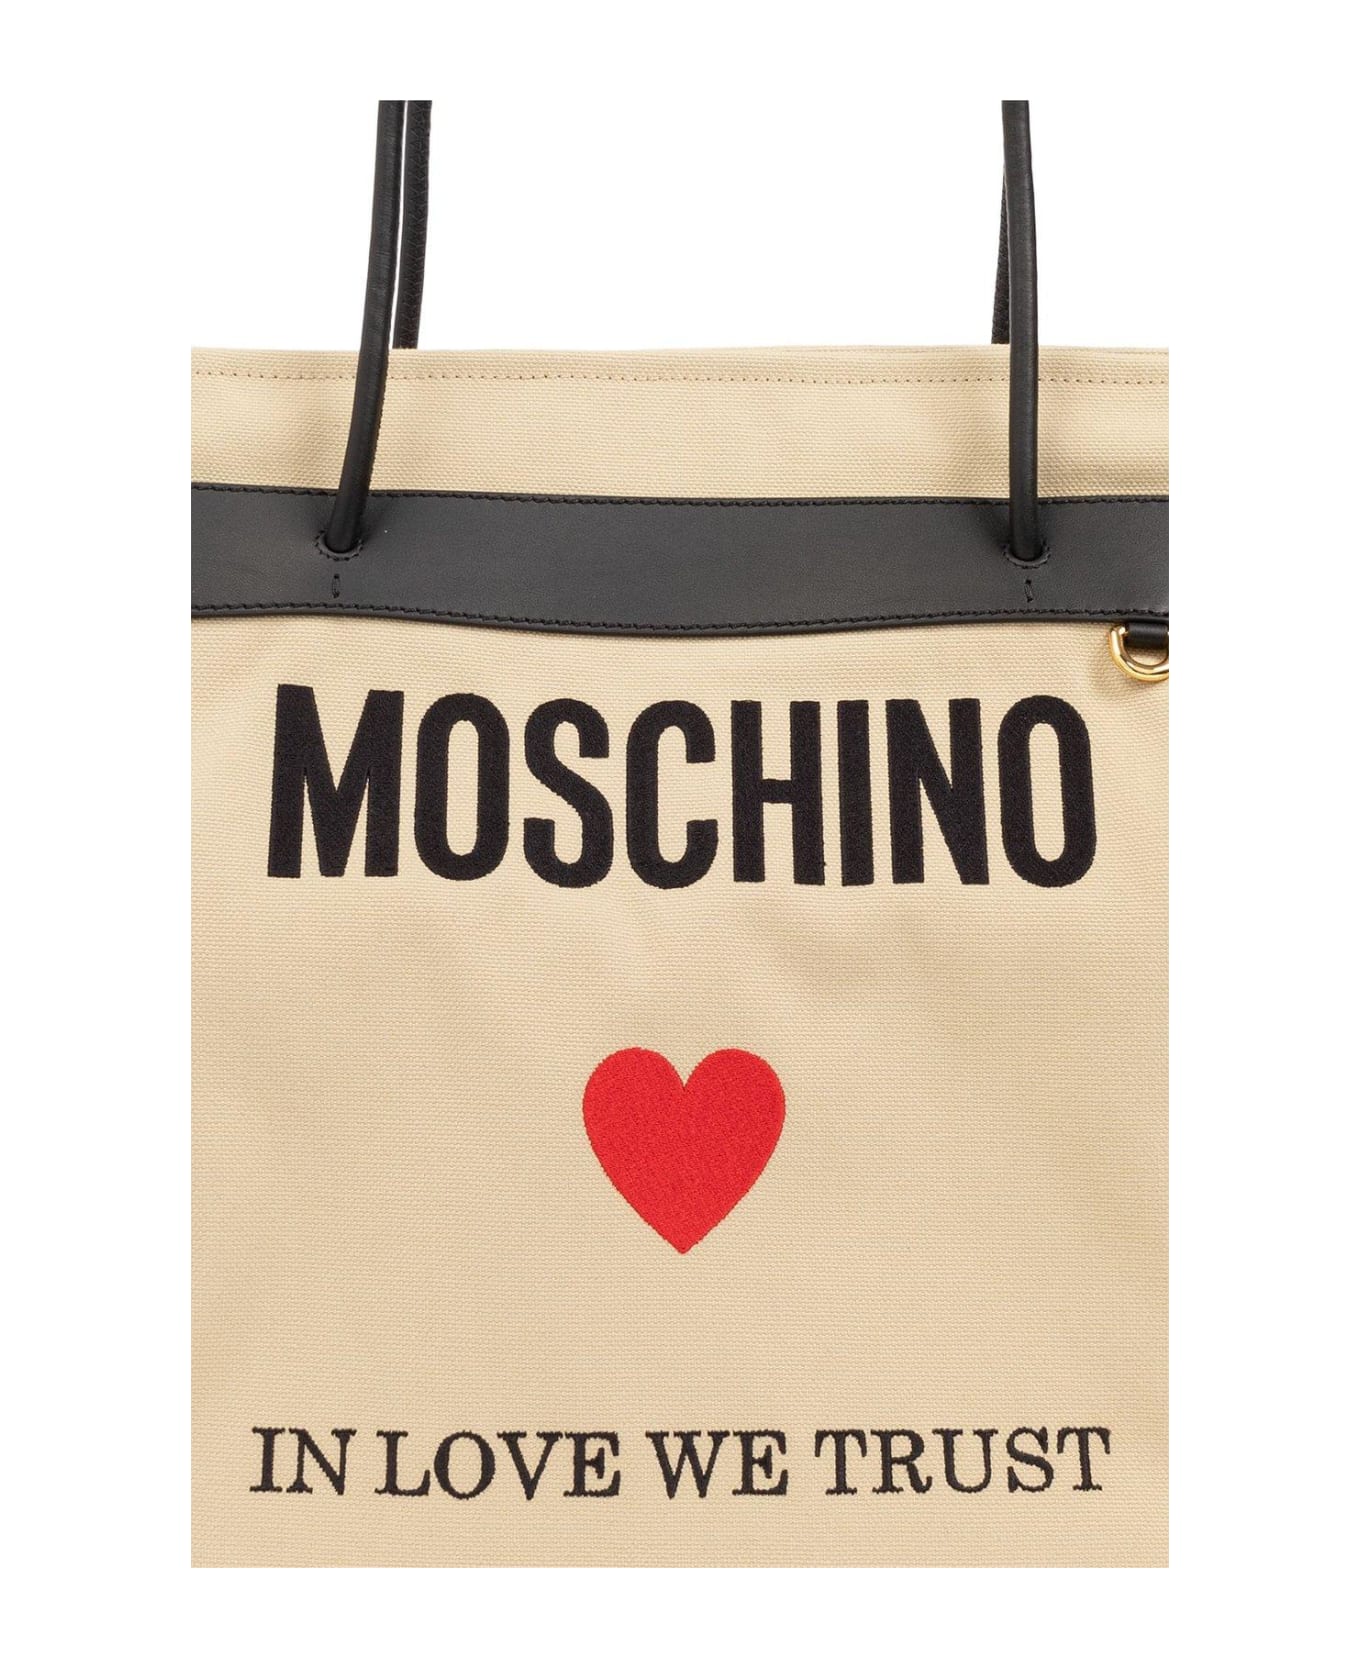 Moschino Open-top Shopper Bag - Beige トートバッグ